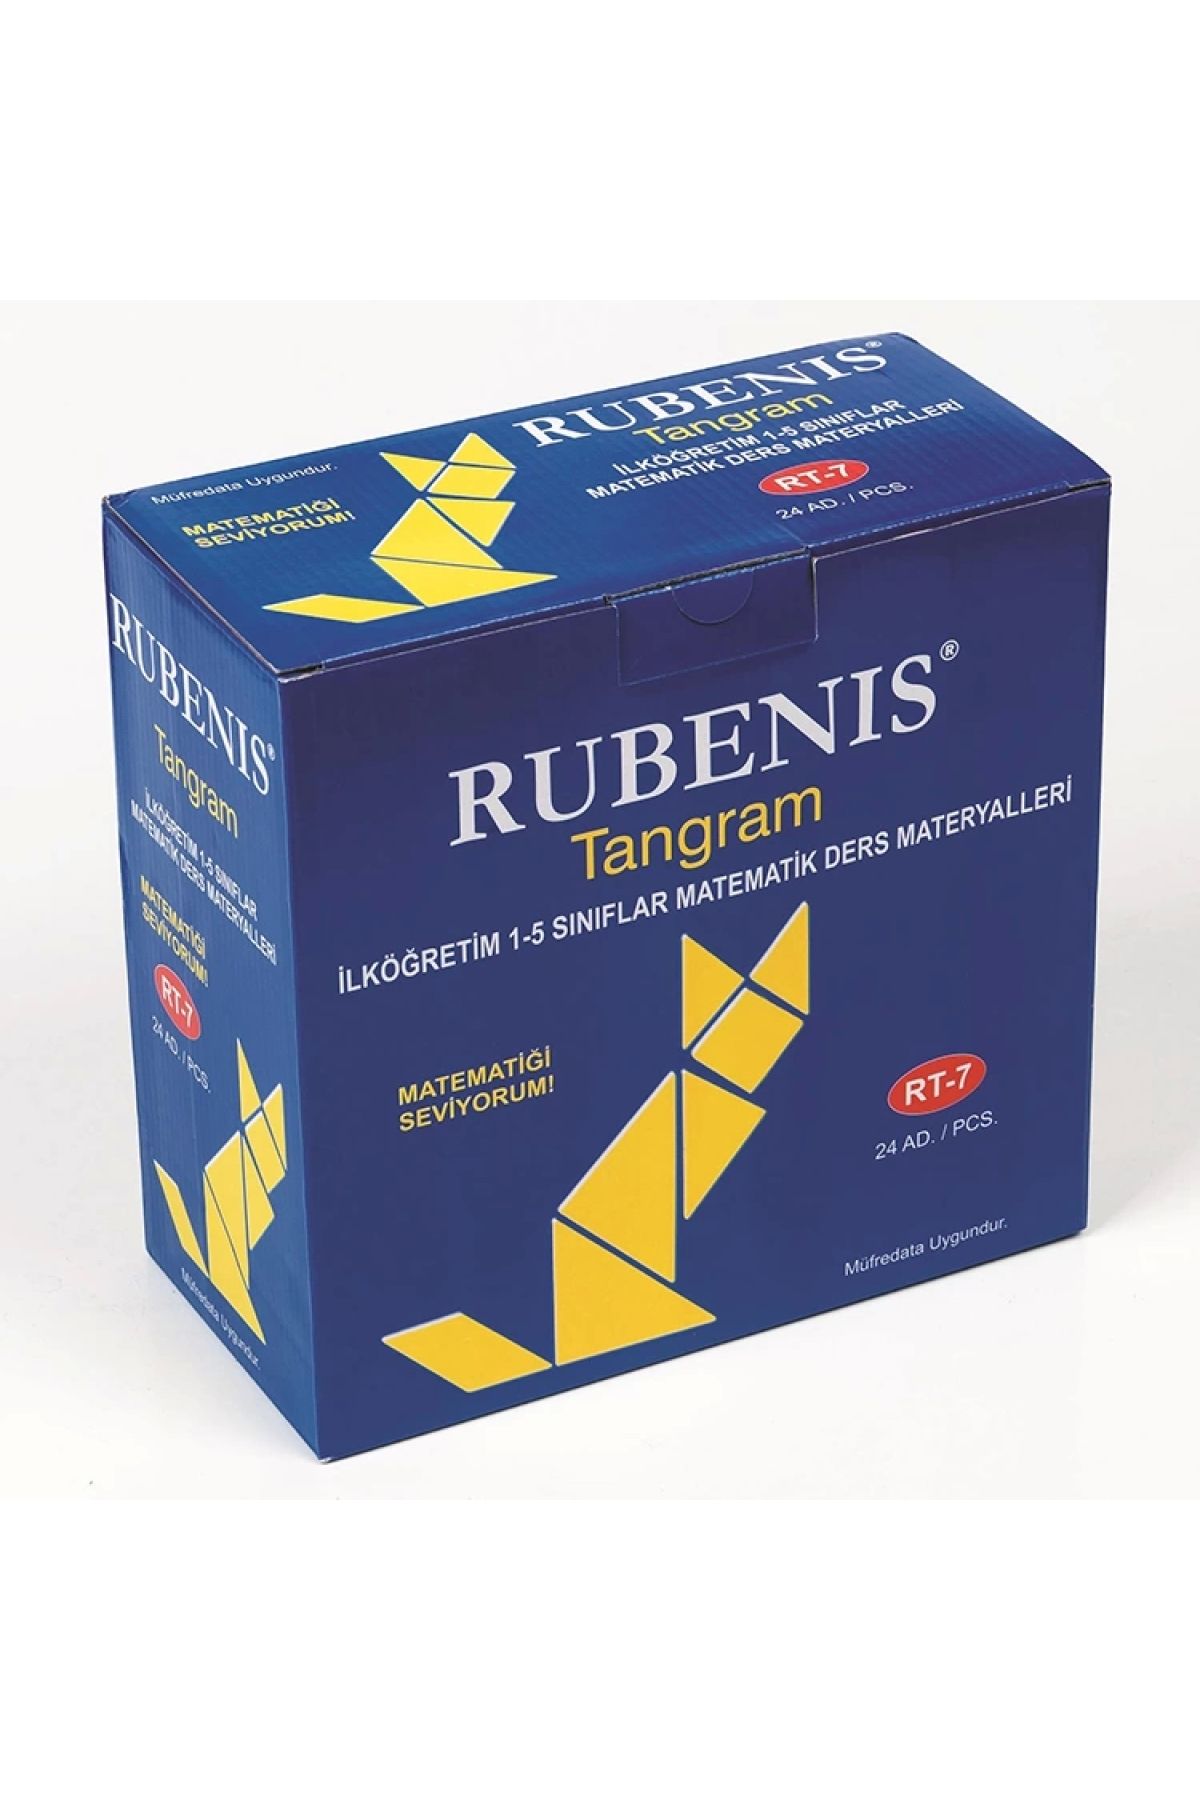 Rubenis RUBENİS RT-7 TANGRAM